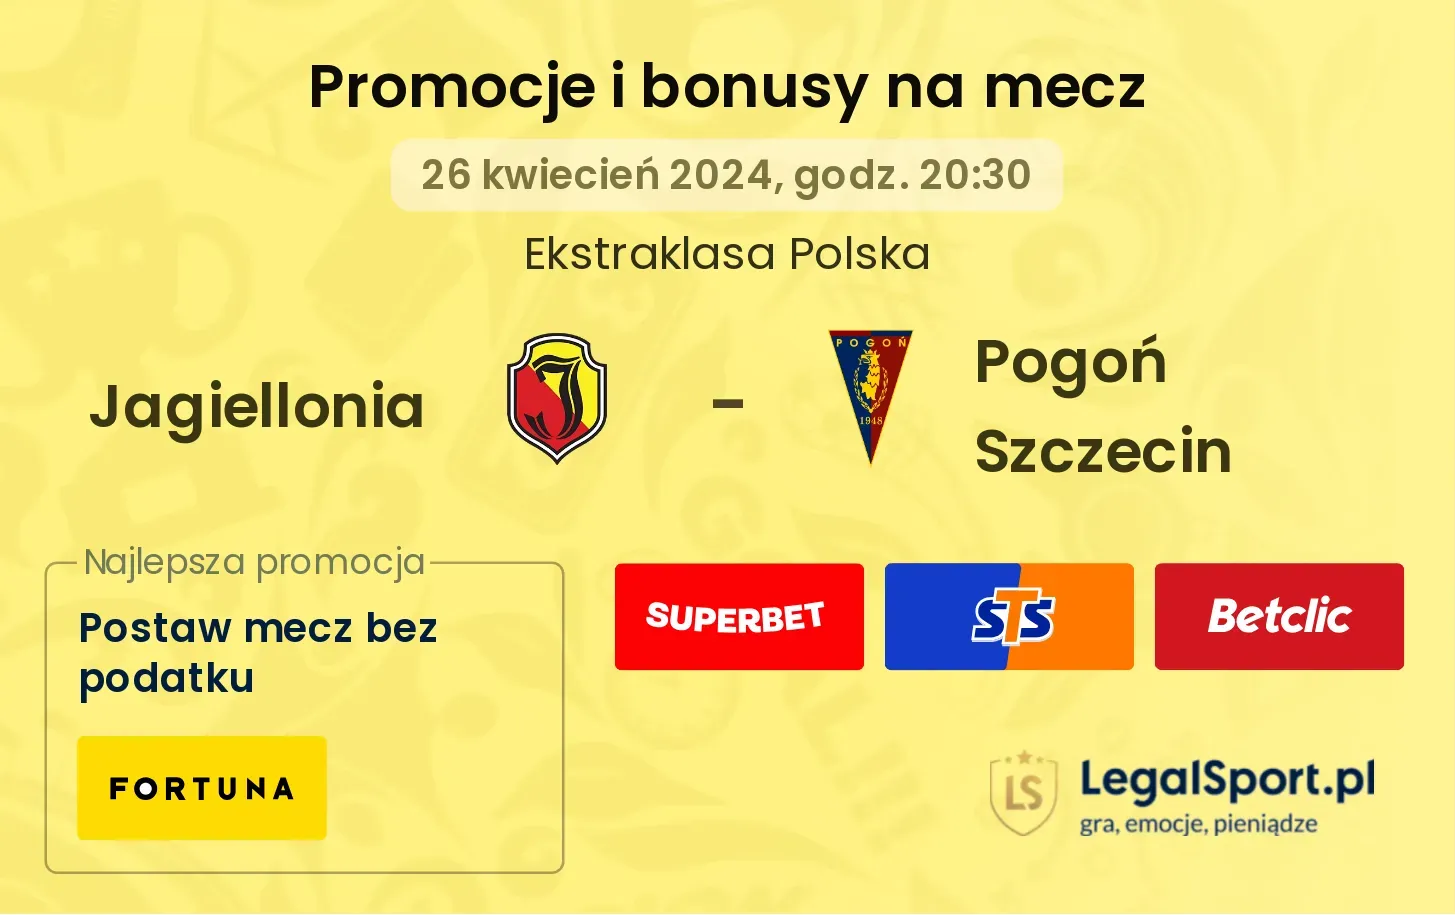 Jagiellonia - Pogoń Szczecin promocje bonusy na mecz